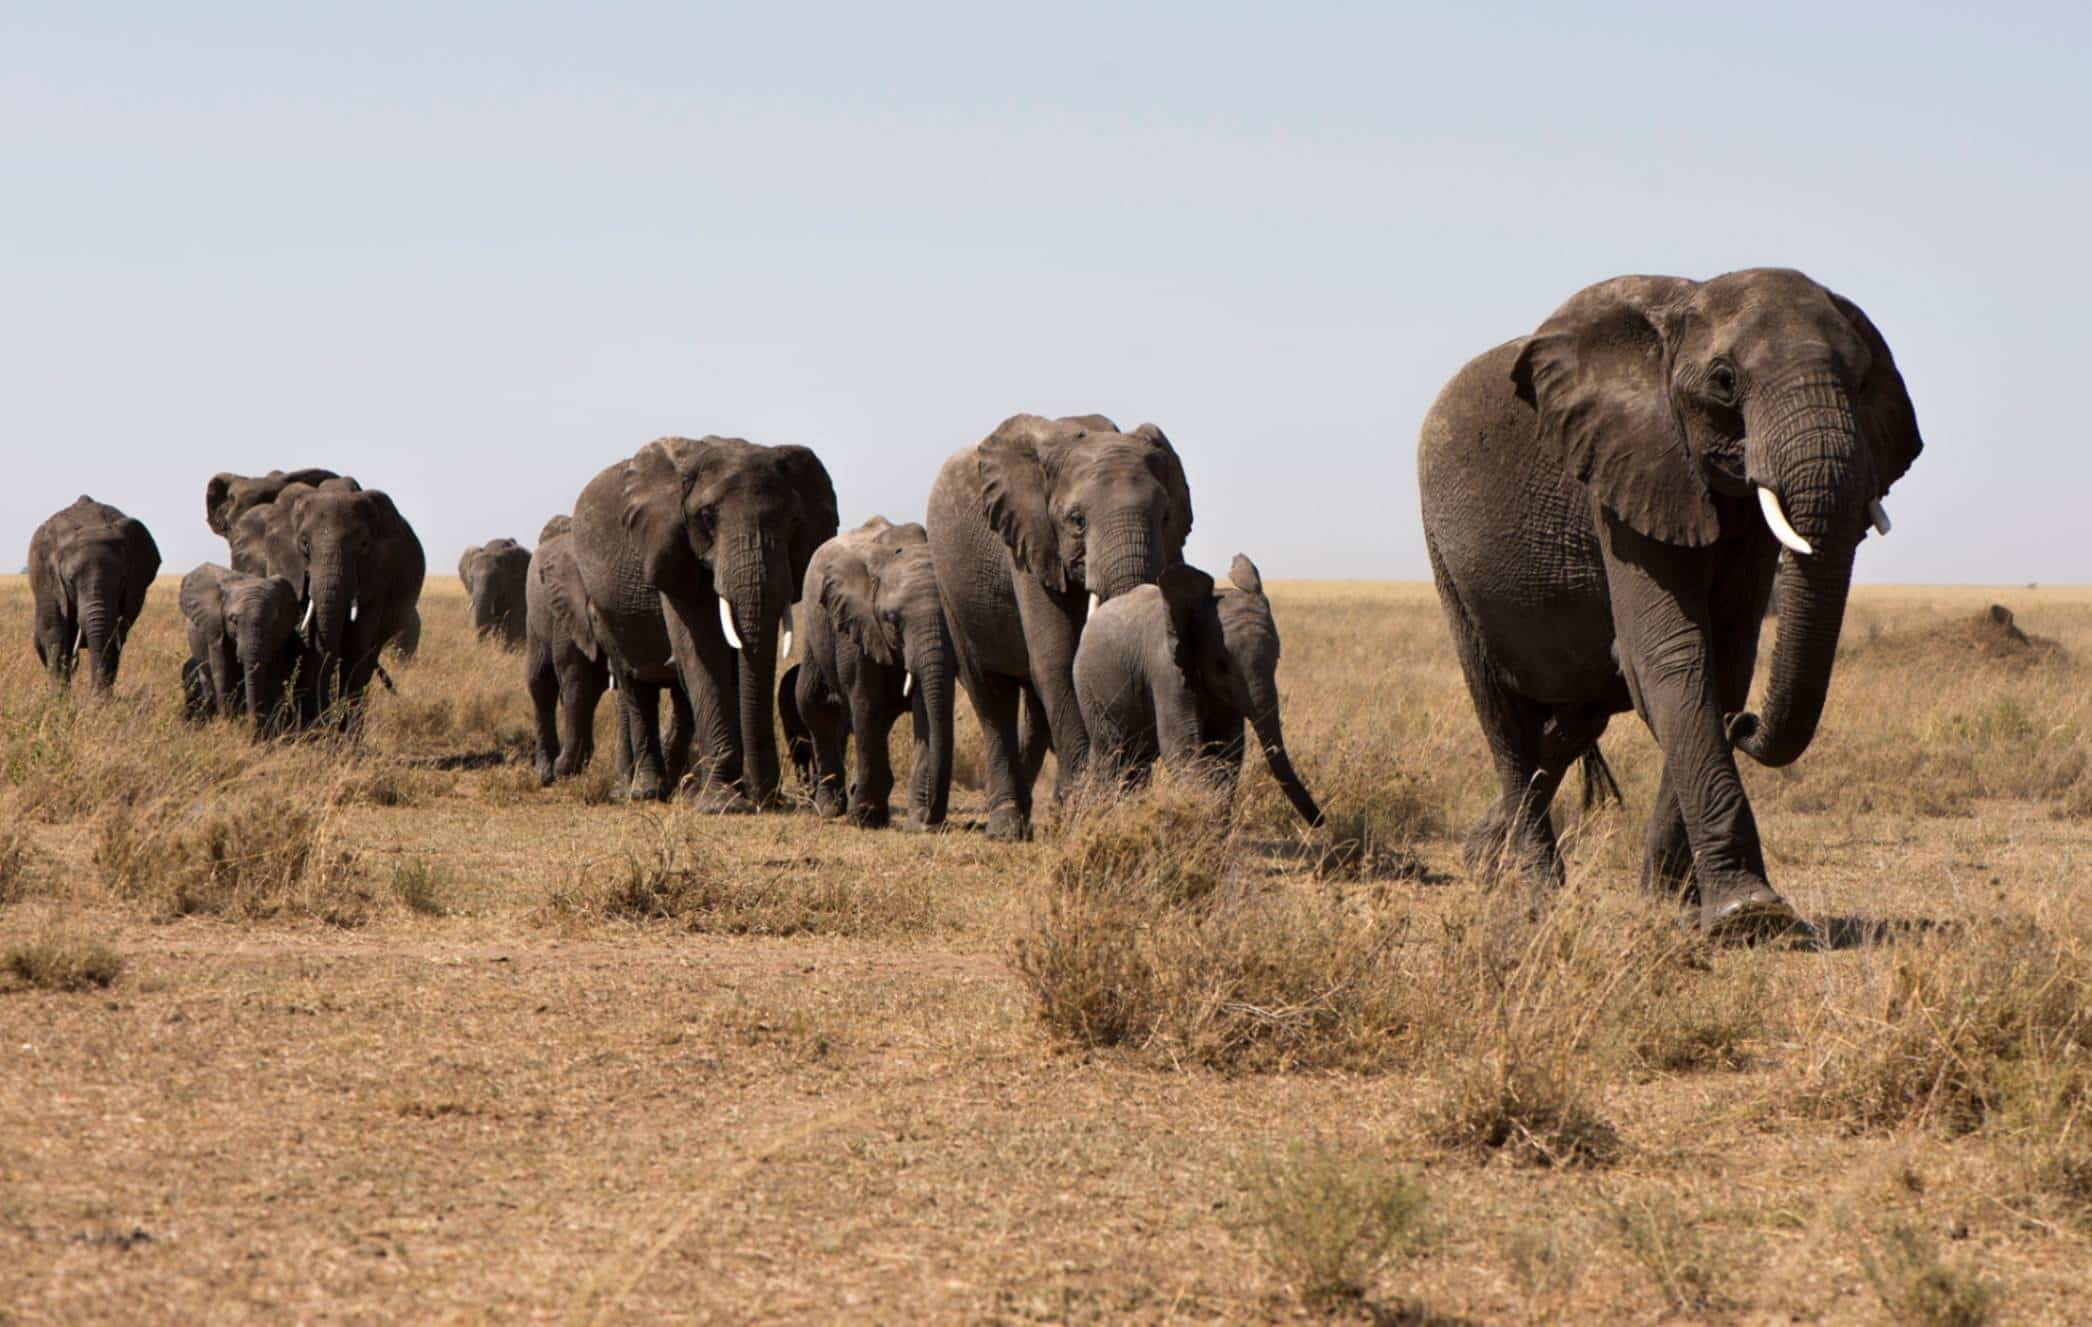 A herd of elephants walking on grassland.